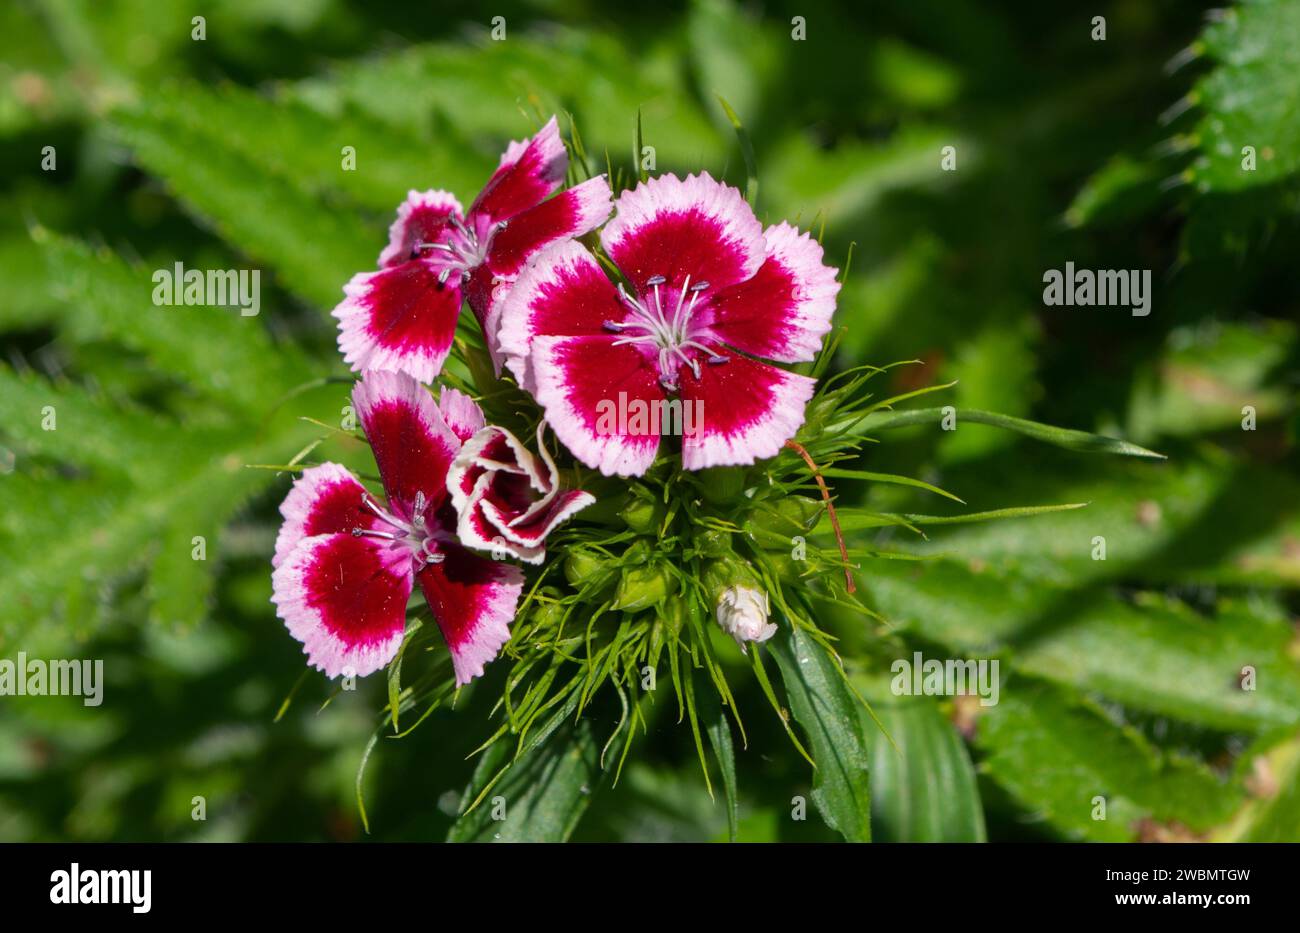 Dianthus barbatus Sweet William Bi Colour or Color Plant in Flower Stock Photo